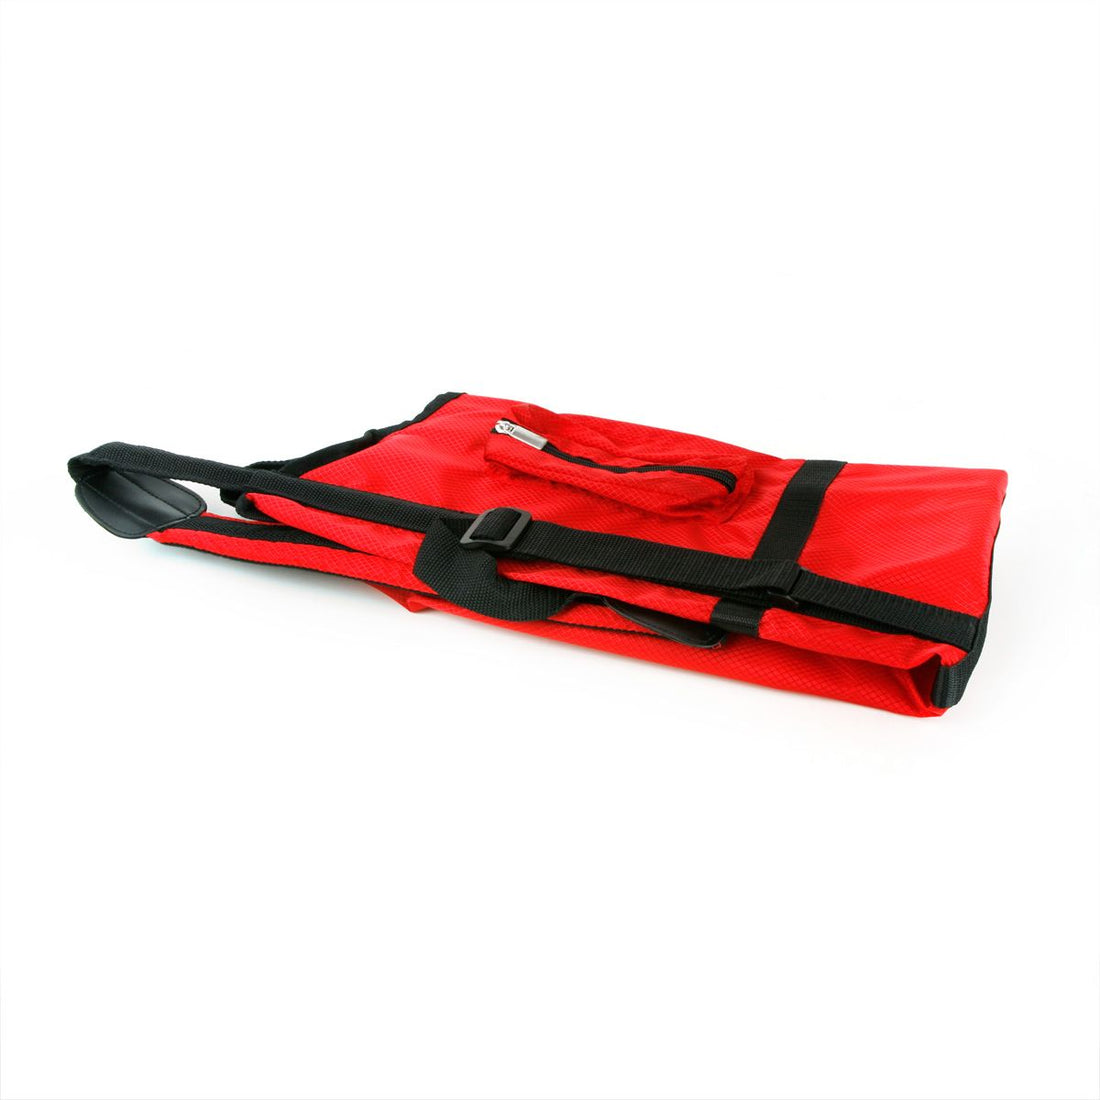 a red Orlimar Sunday Golf Bag folded for storage